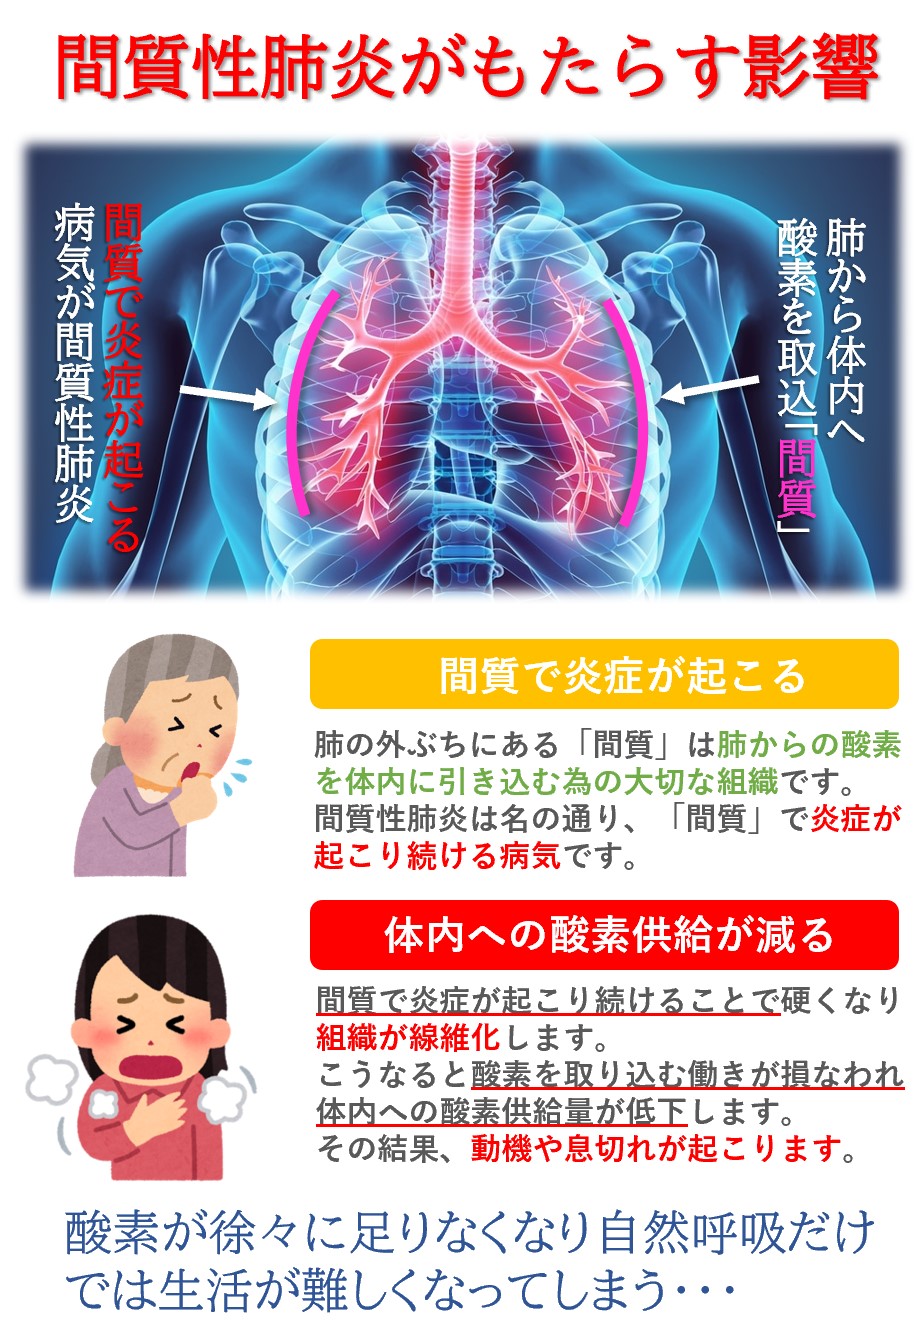 間質性肺炎が重症化すると体内への酸素供給が低下し「動機・息切れ」といった身体症状が表れます。